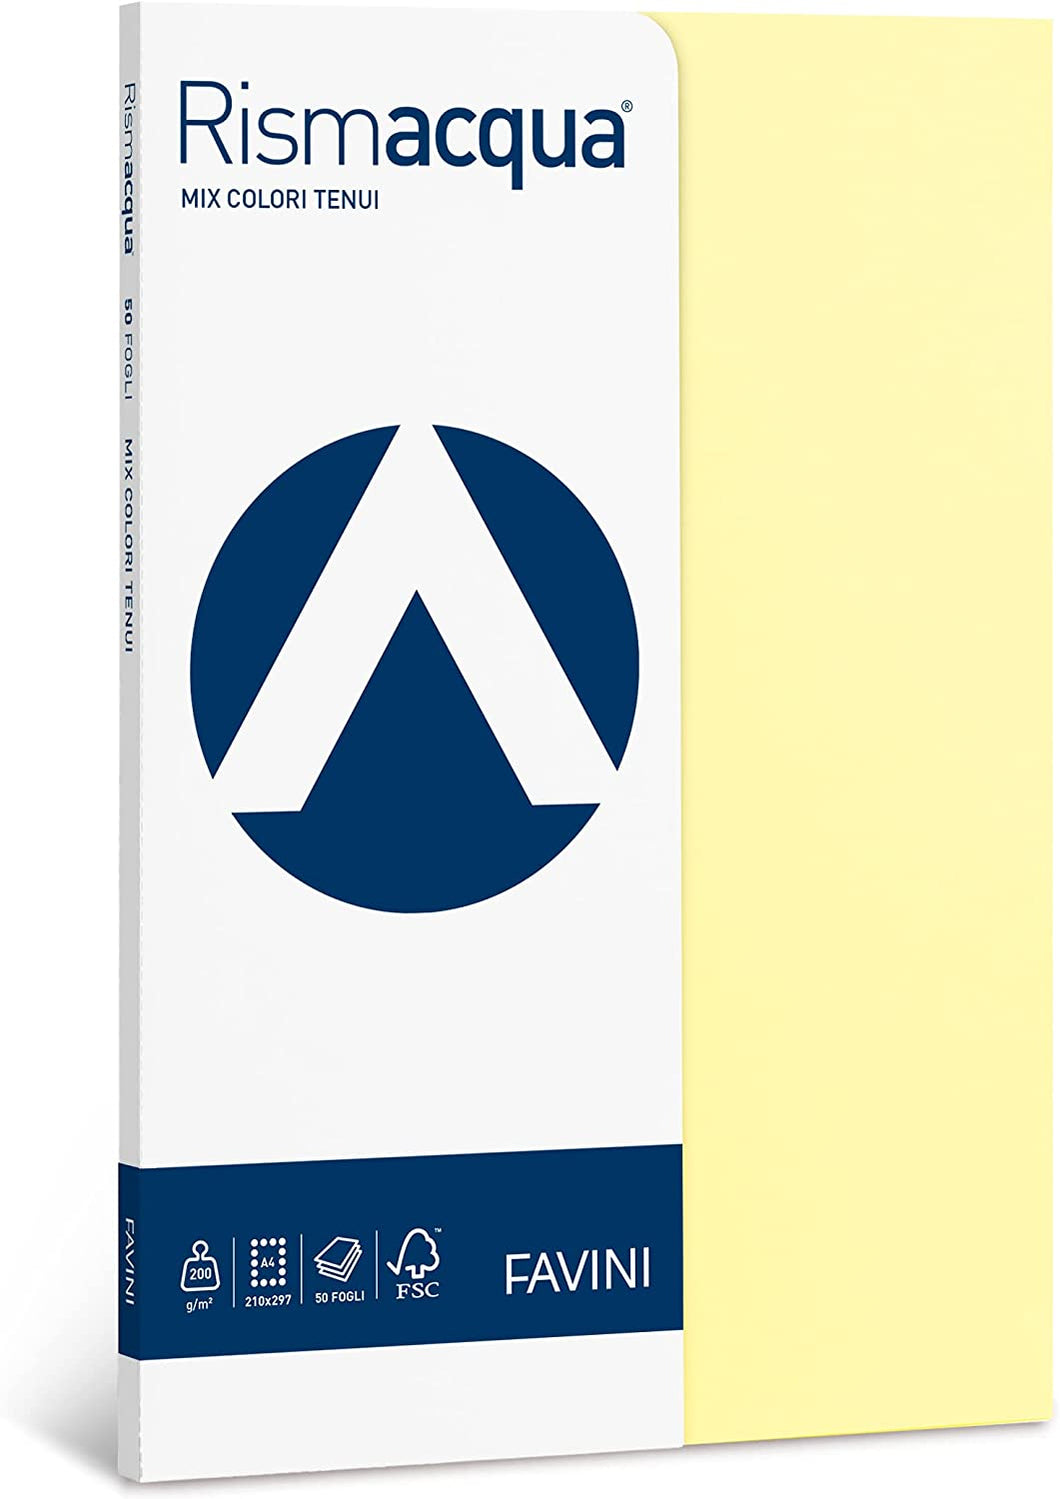 FAVINI - CARTONCINO FORMATO A4 - 50 FOGLI CM 21x29,7 - 5 Colori Assortiti Tenui, pastello